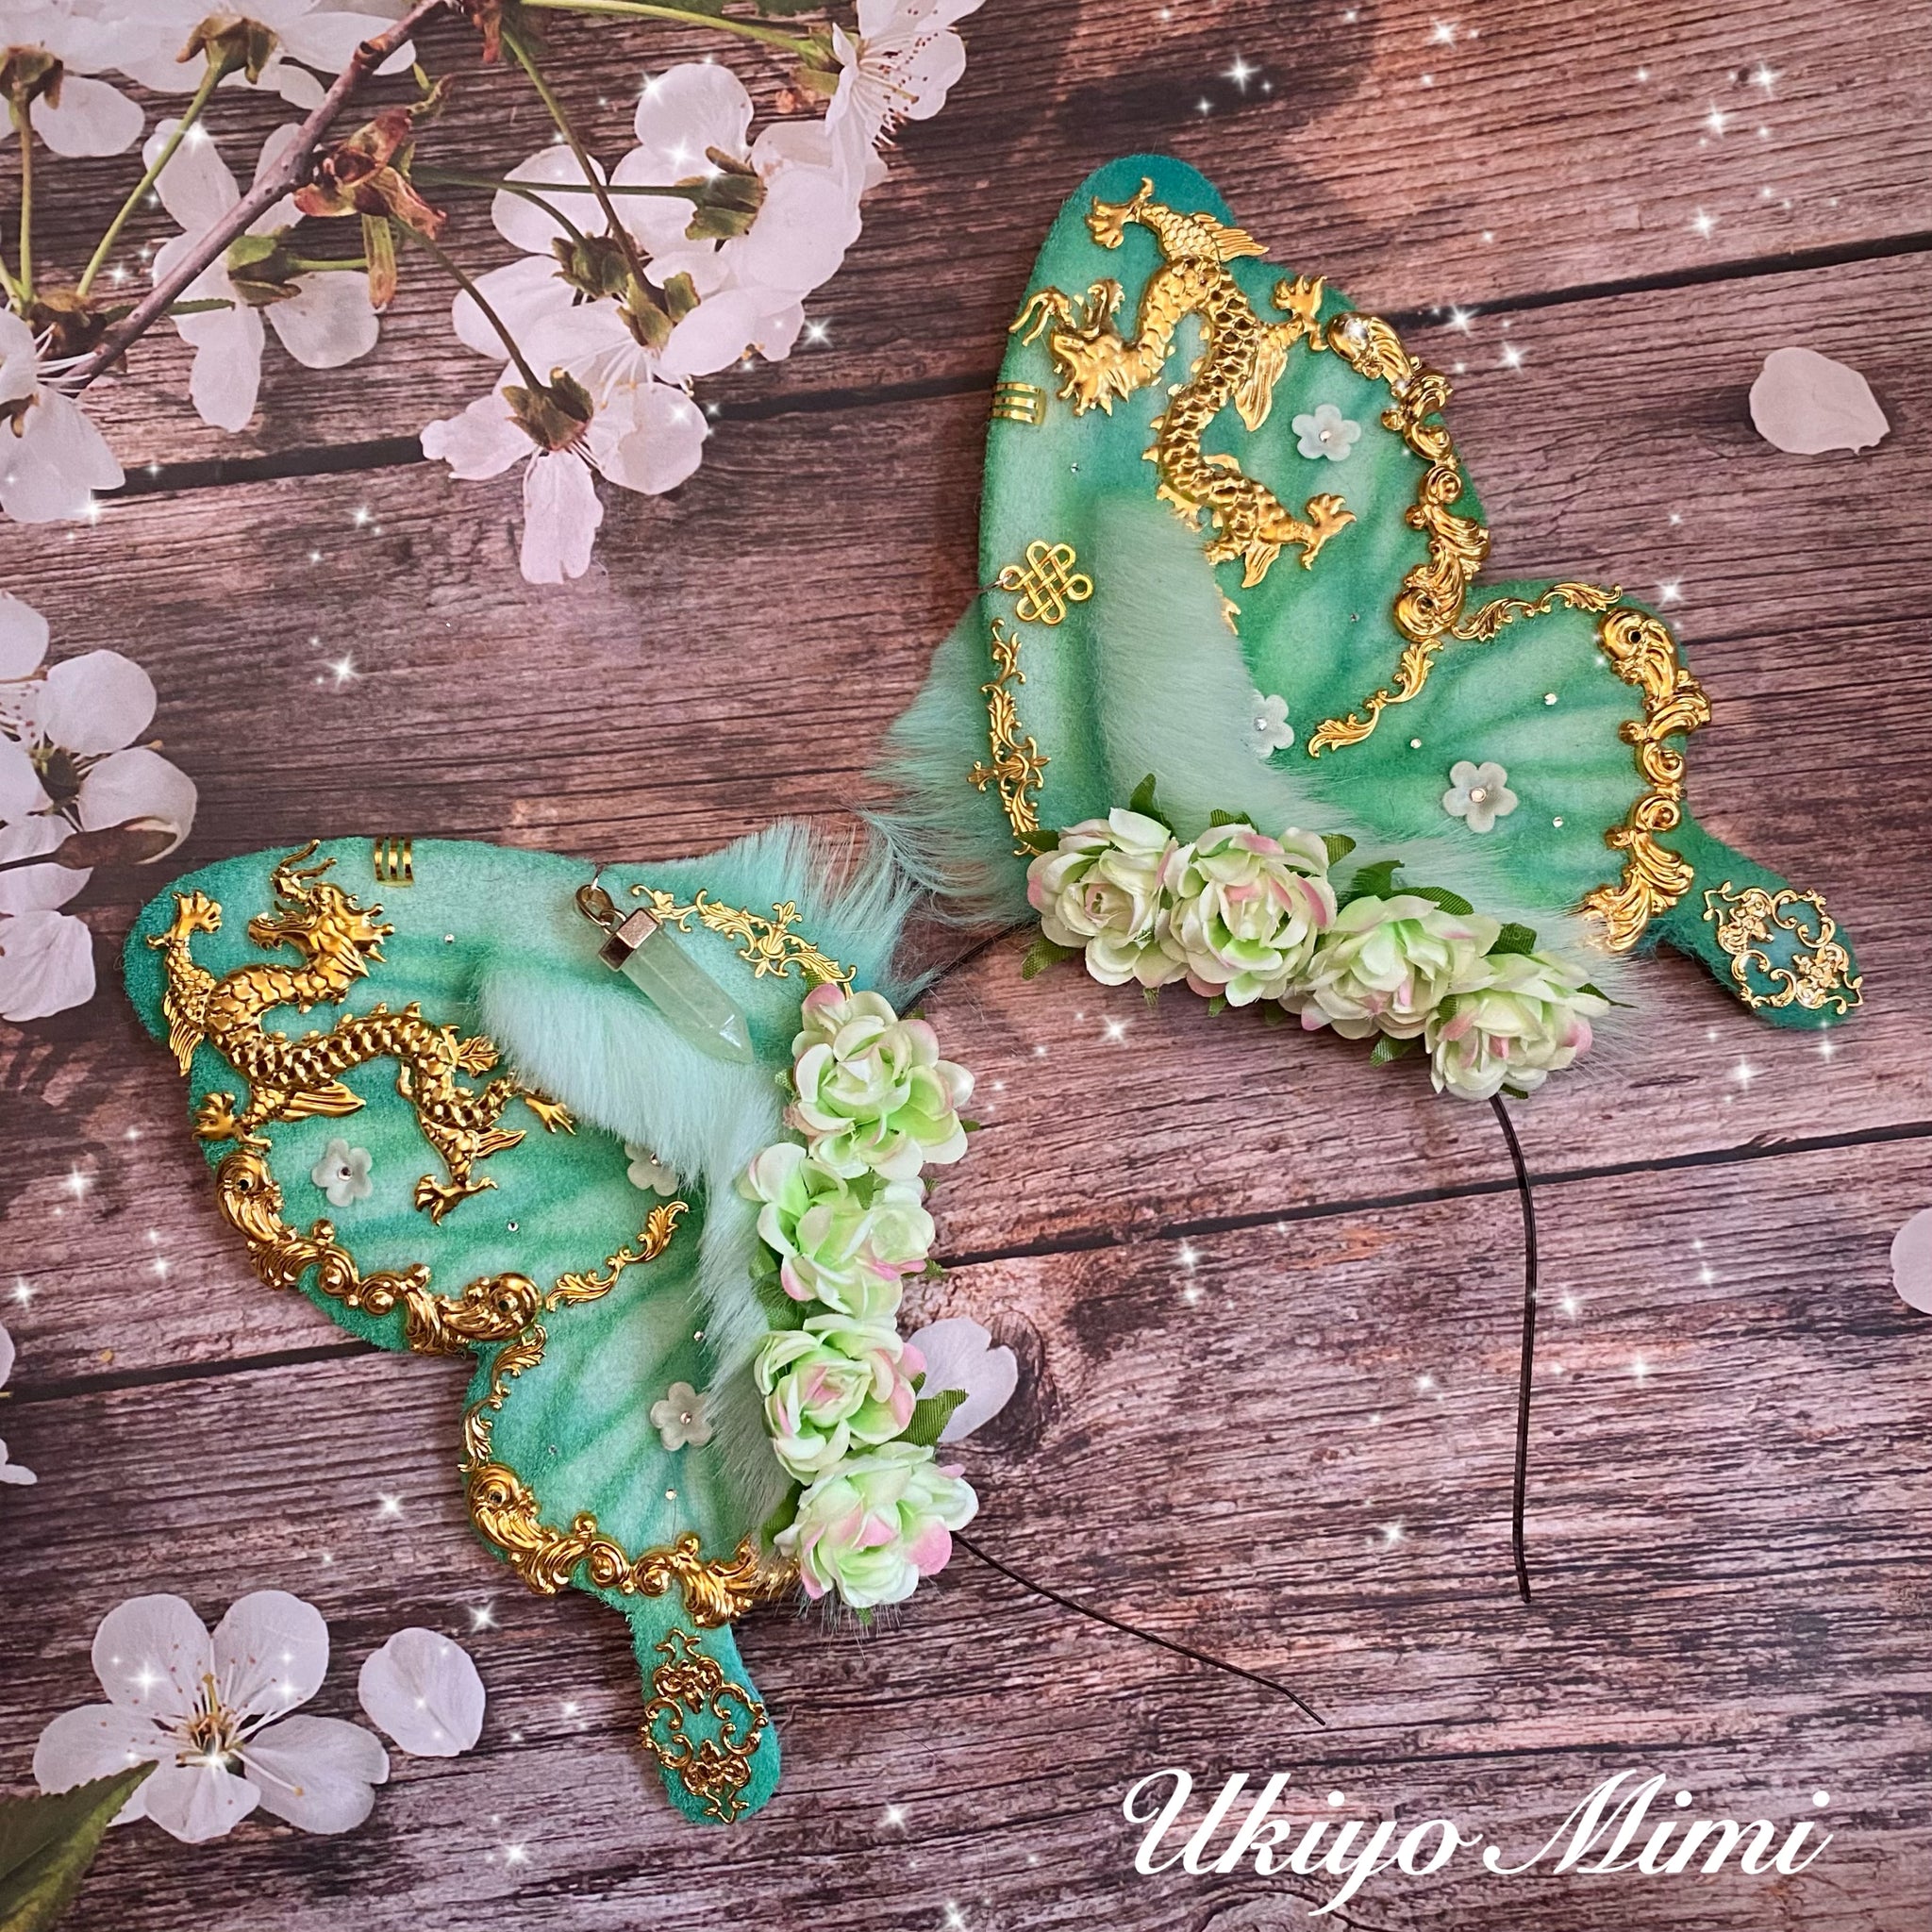 Jade Butterfly Ears